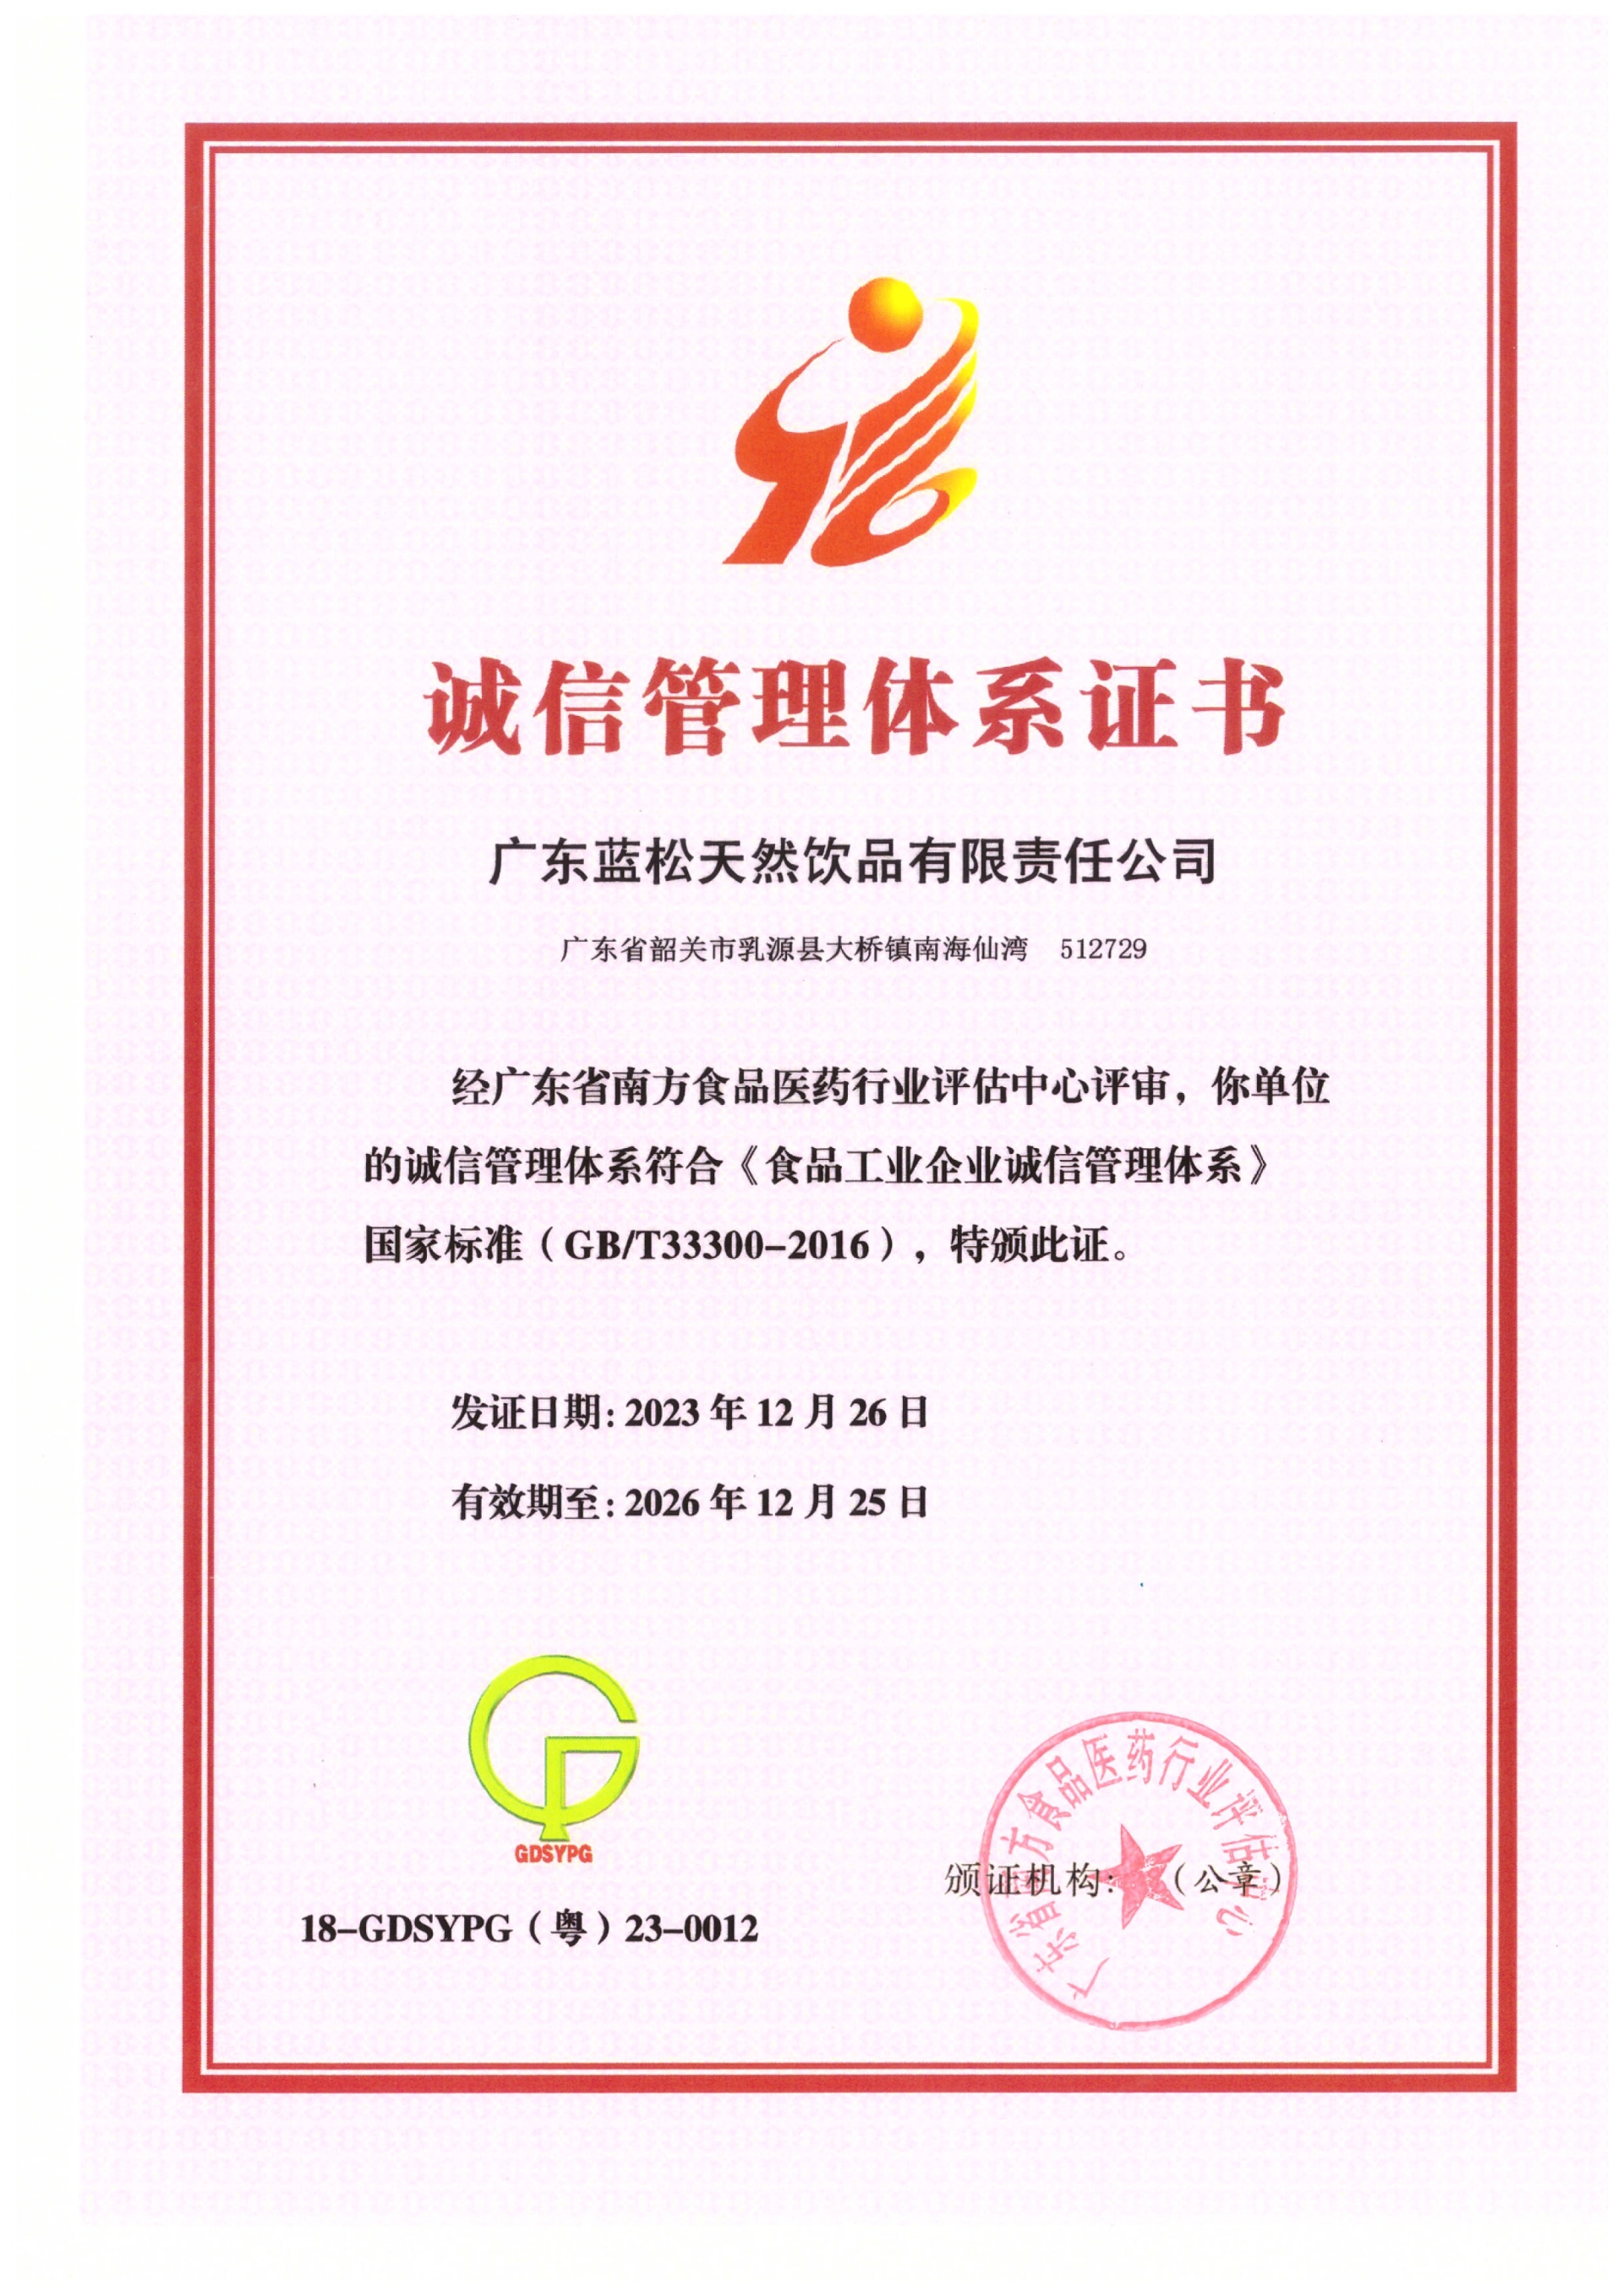 广东bwin必赢登录入口获食品工业企业诚信管理体系认证